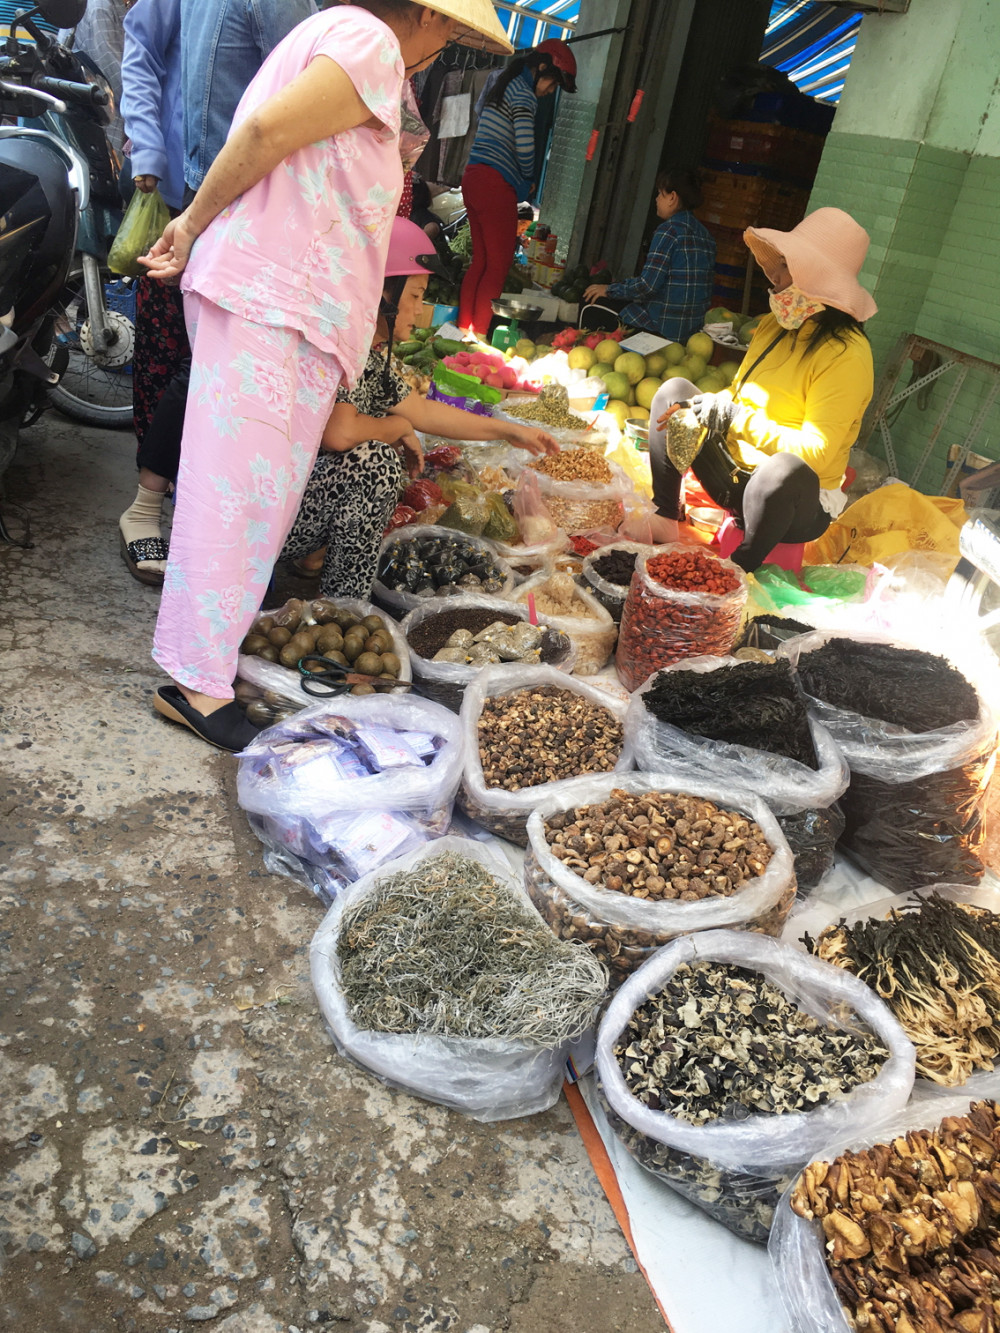 Thảo dược được bày bán ở chợ truyền thống với nguồn gốc “trôi nổi”